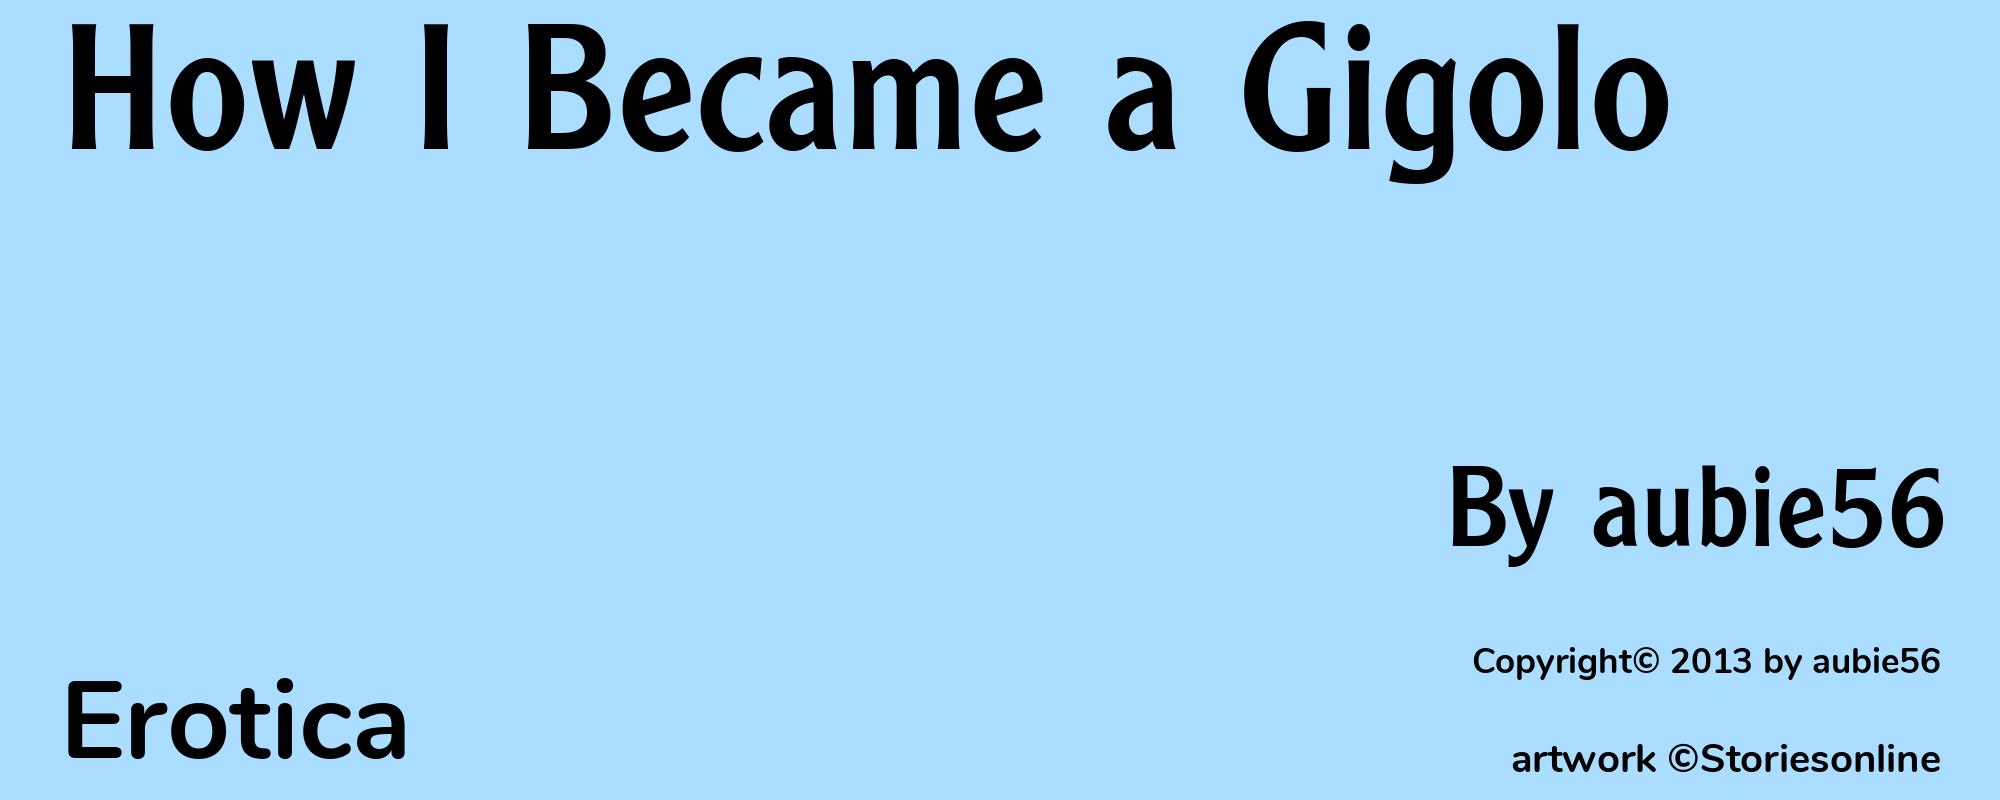 How I Became a Gigolo - Cover